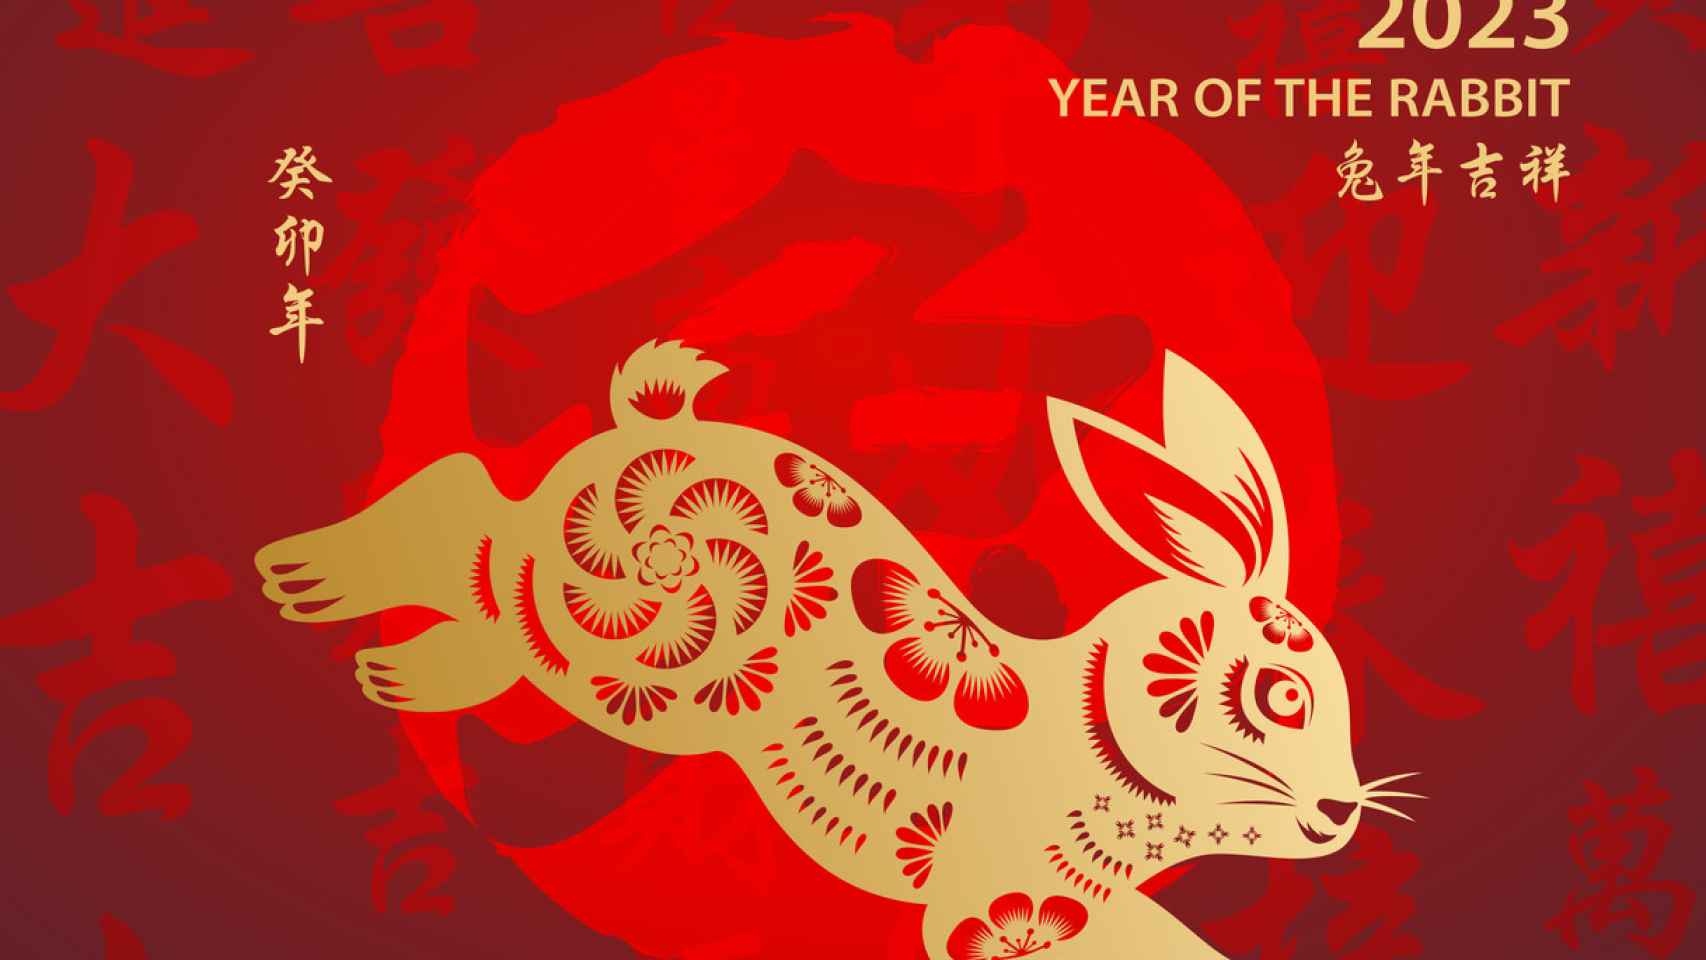 Año Nuevo Chino 2022: fechas, símbolos y animales zodiacales - La Opinión